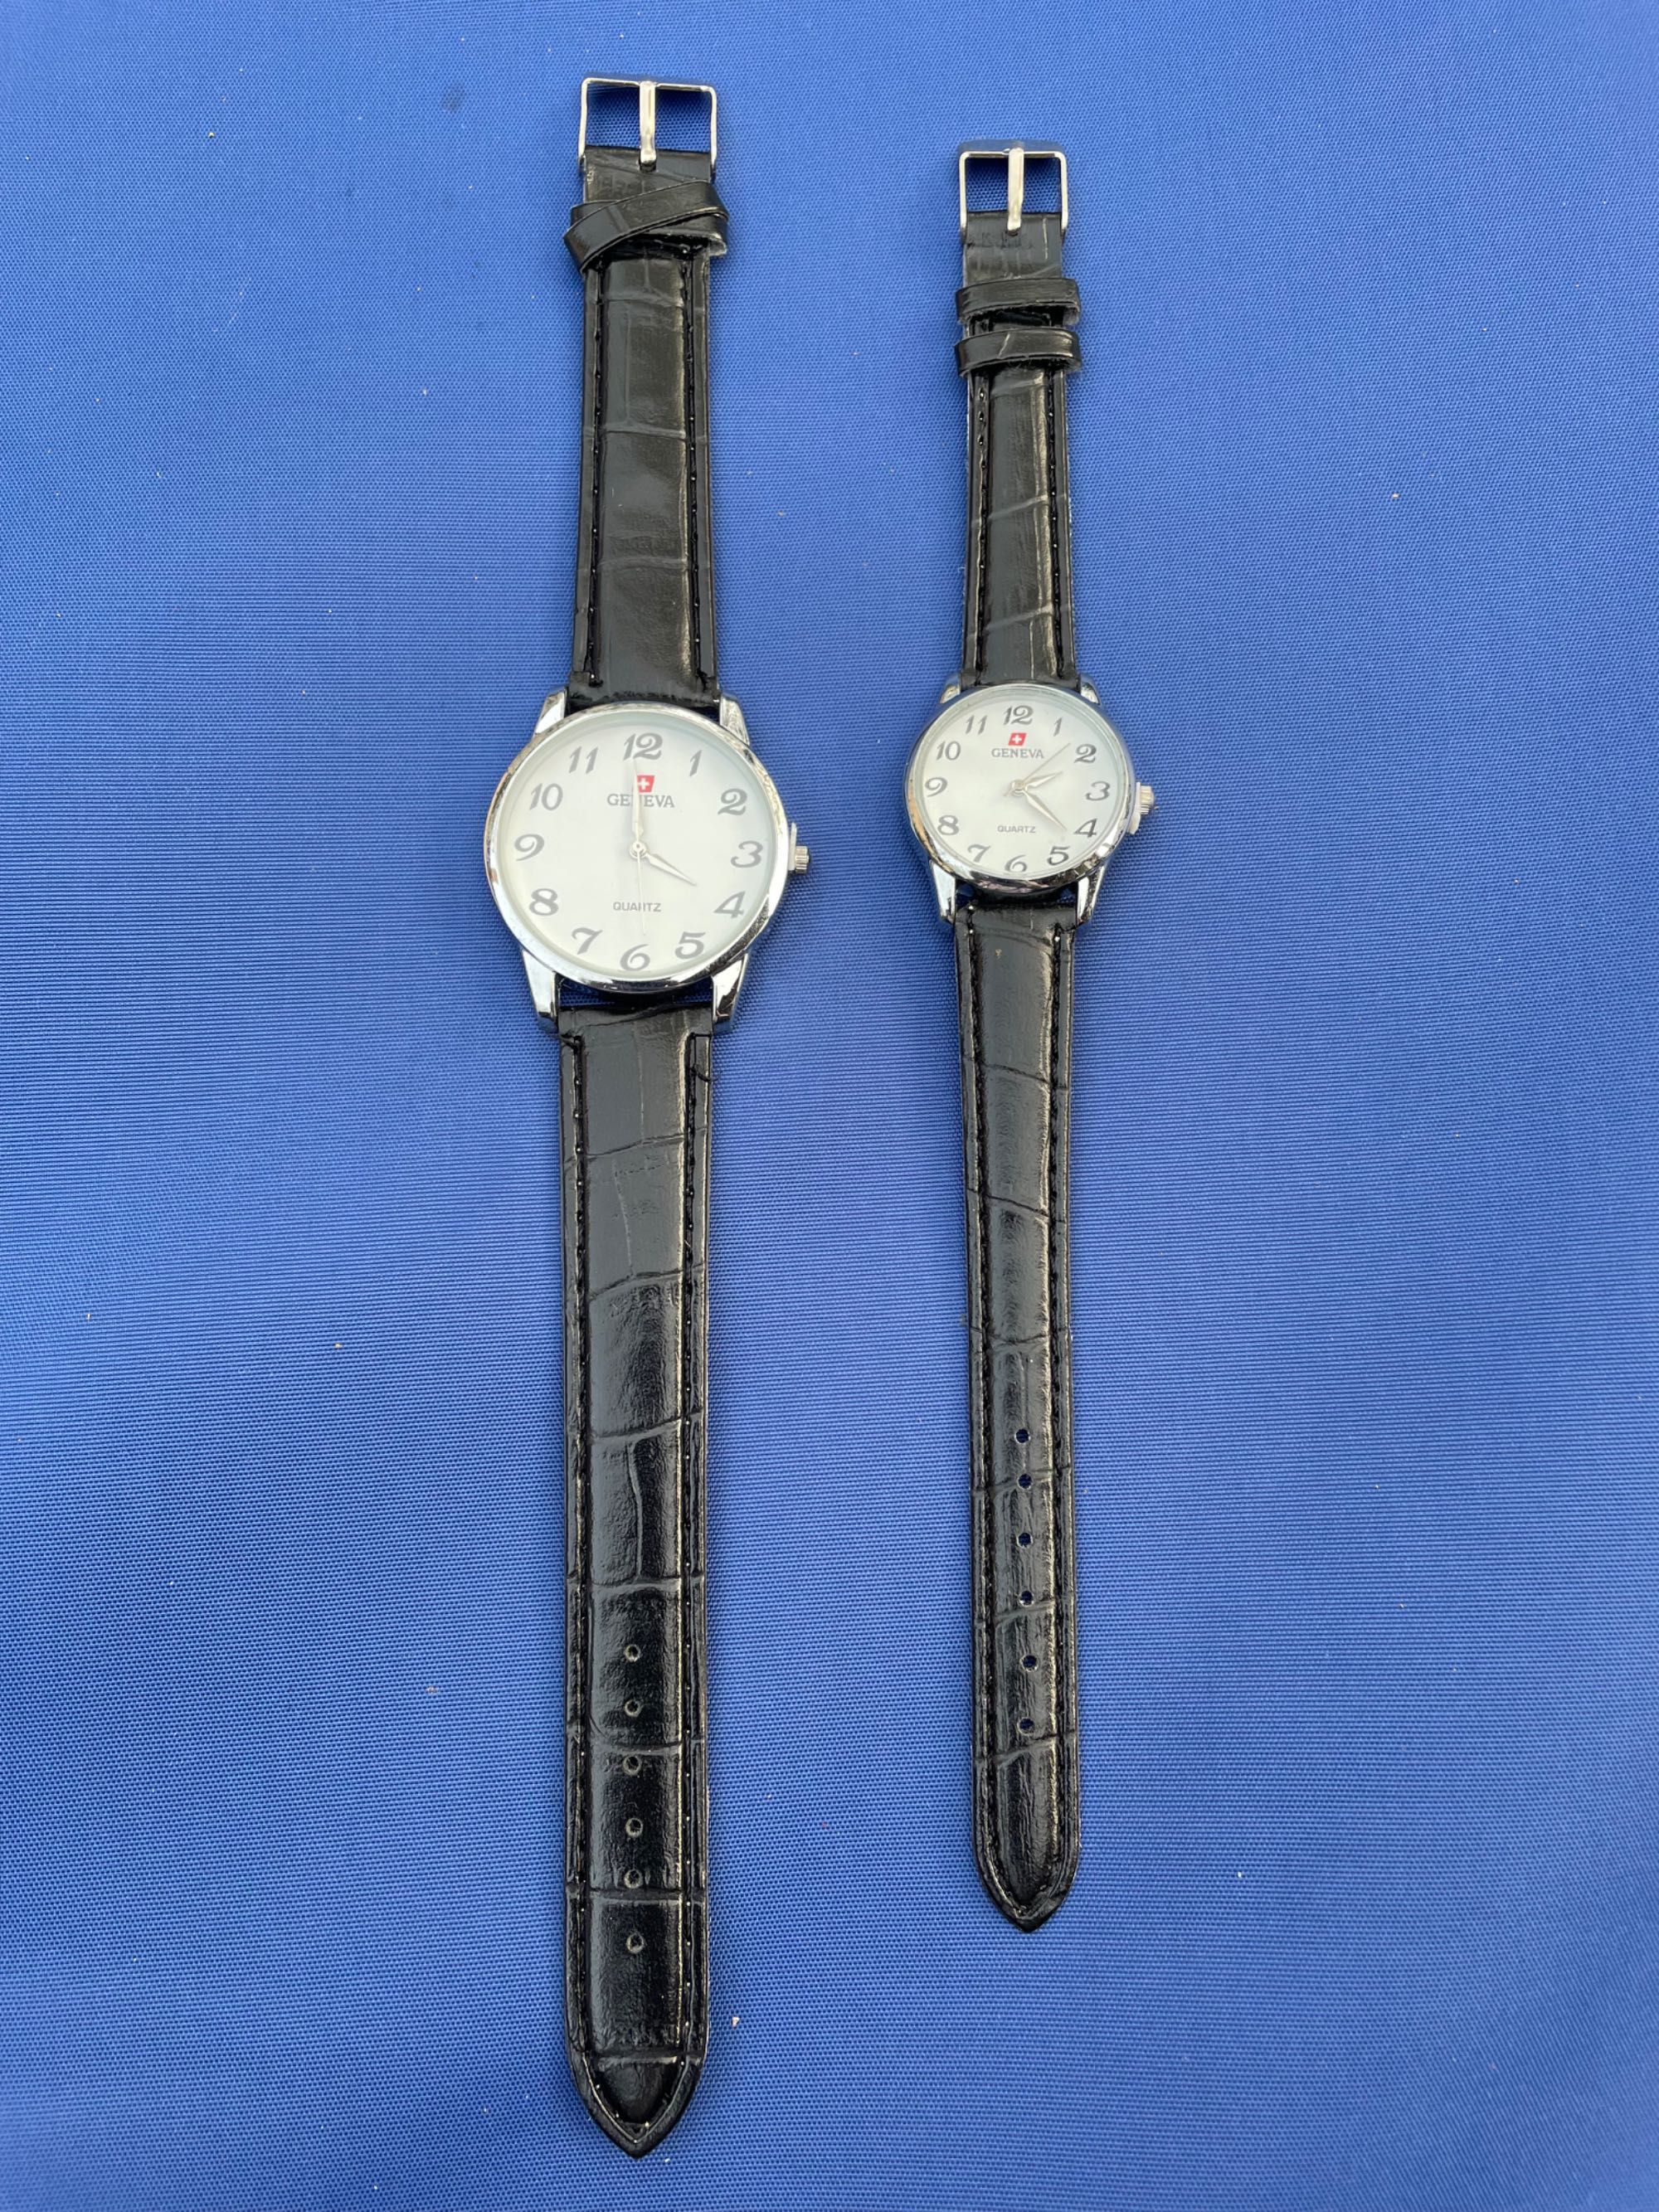 Două ceasuri de damă și bărbat GENEVA QUARTZ pe negru cu argintiu, nou